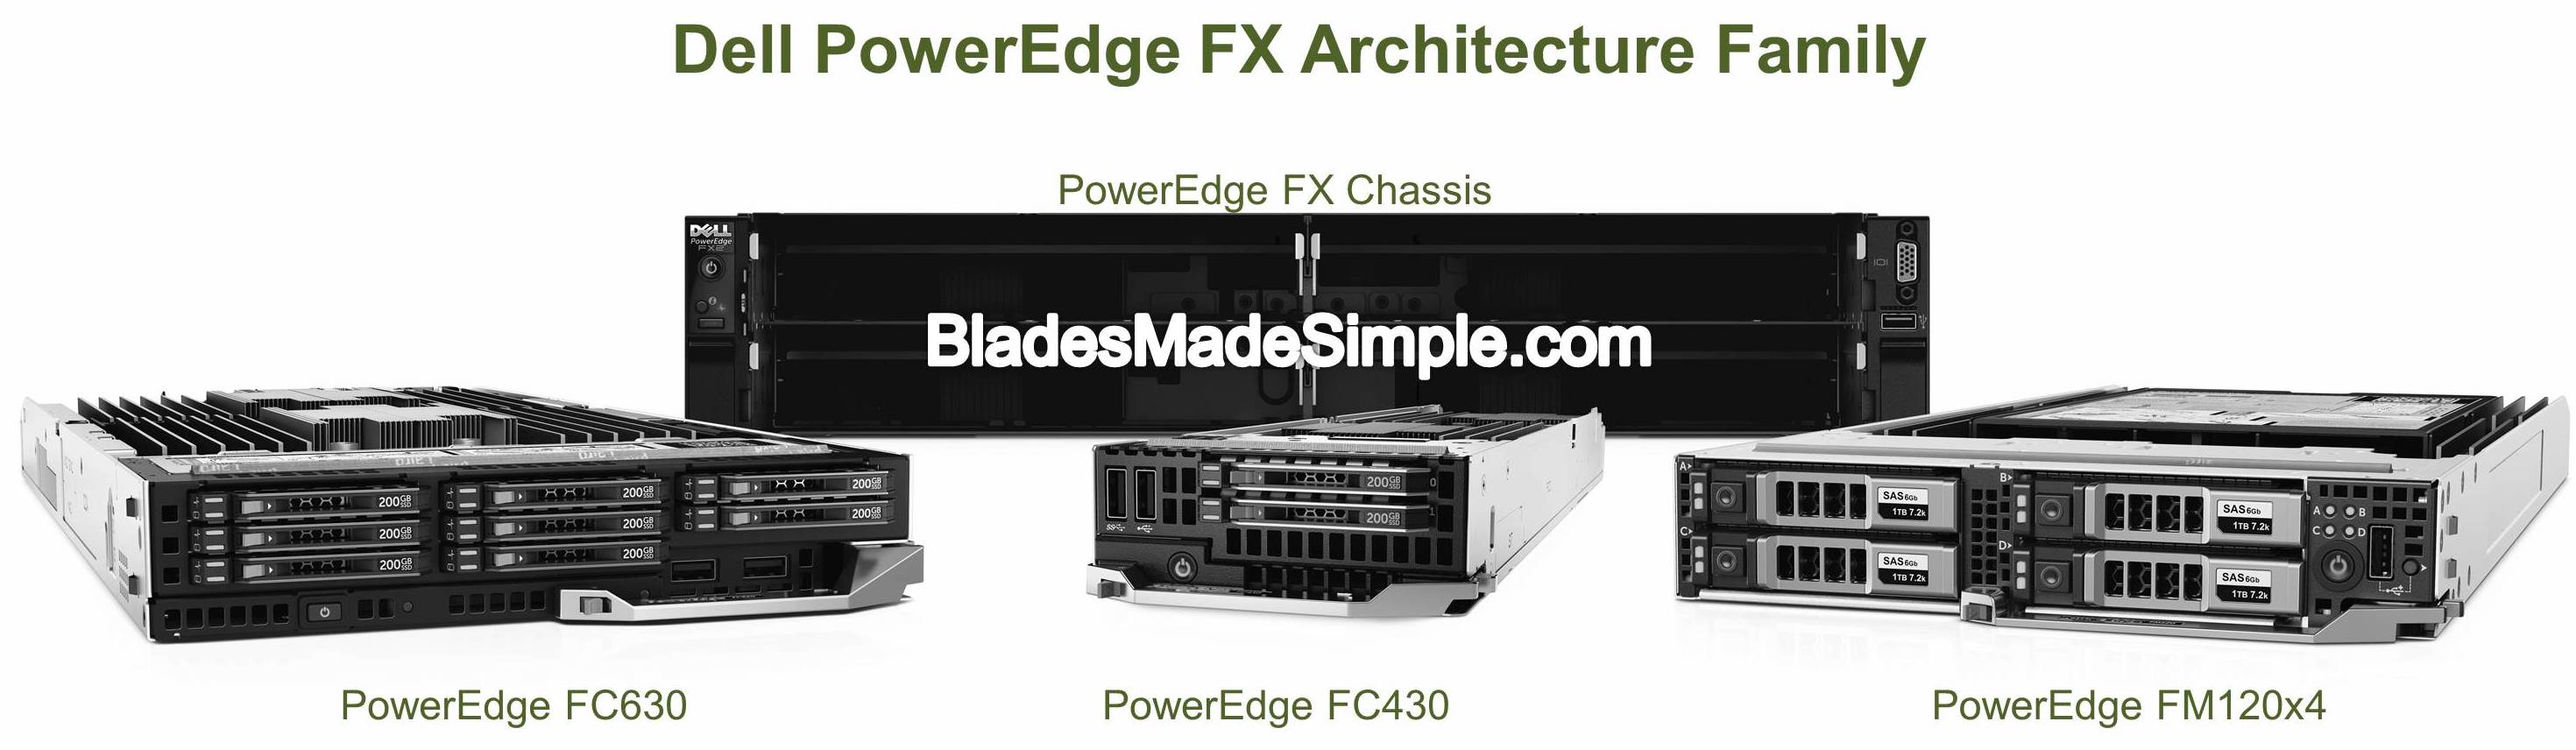 Dell PowerEdge FX Architecture Family